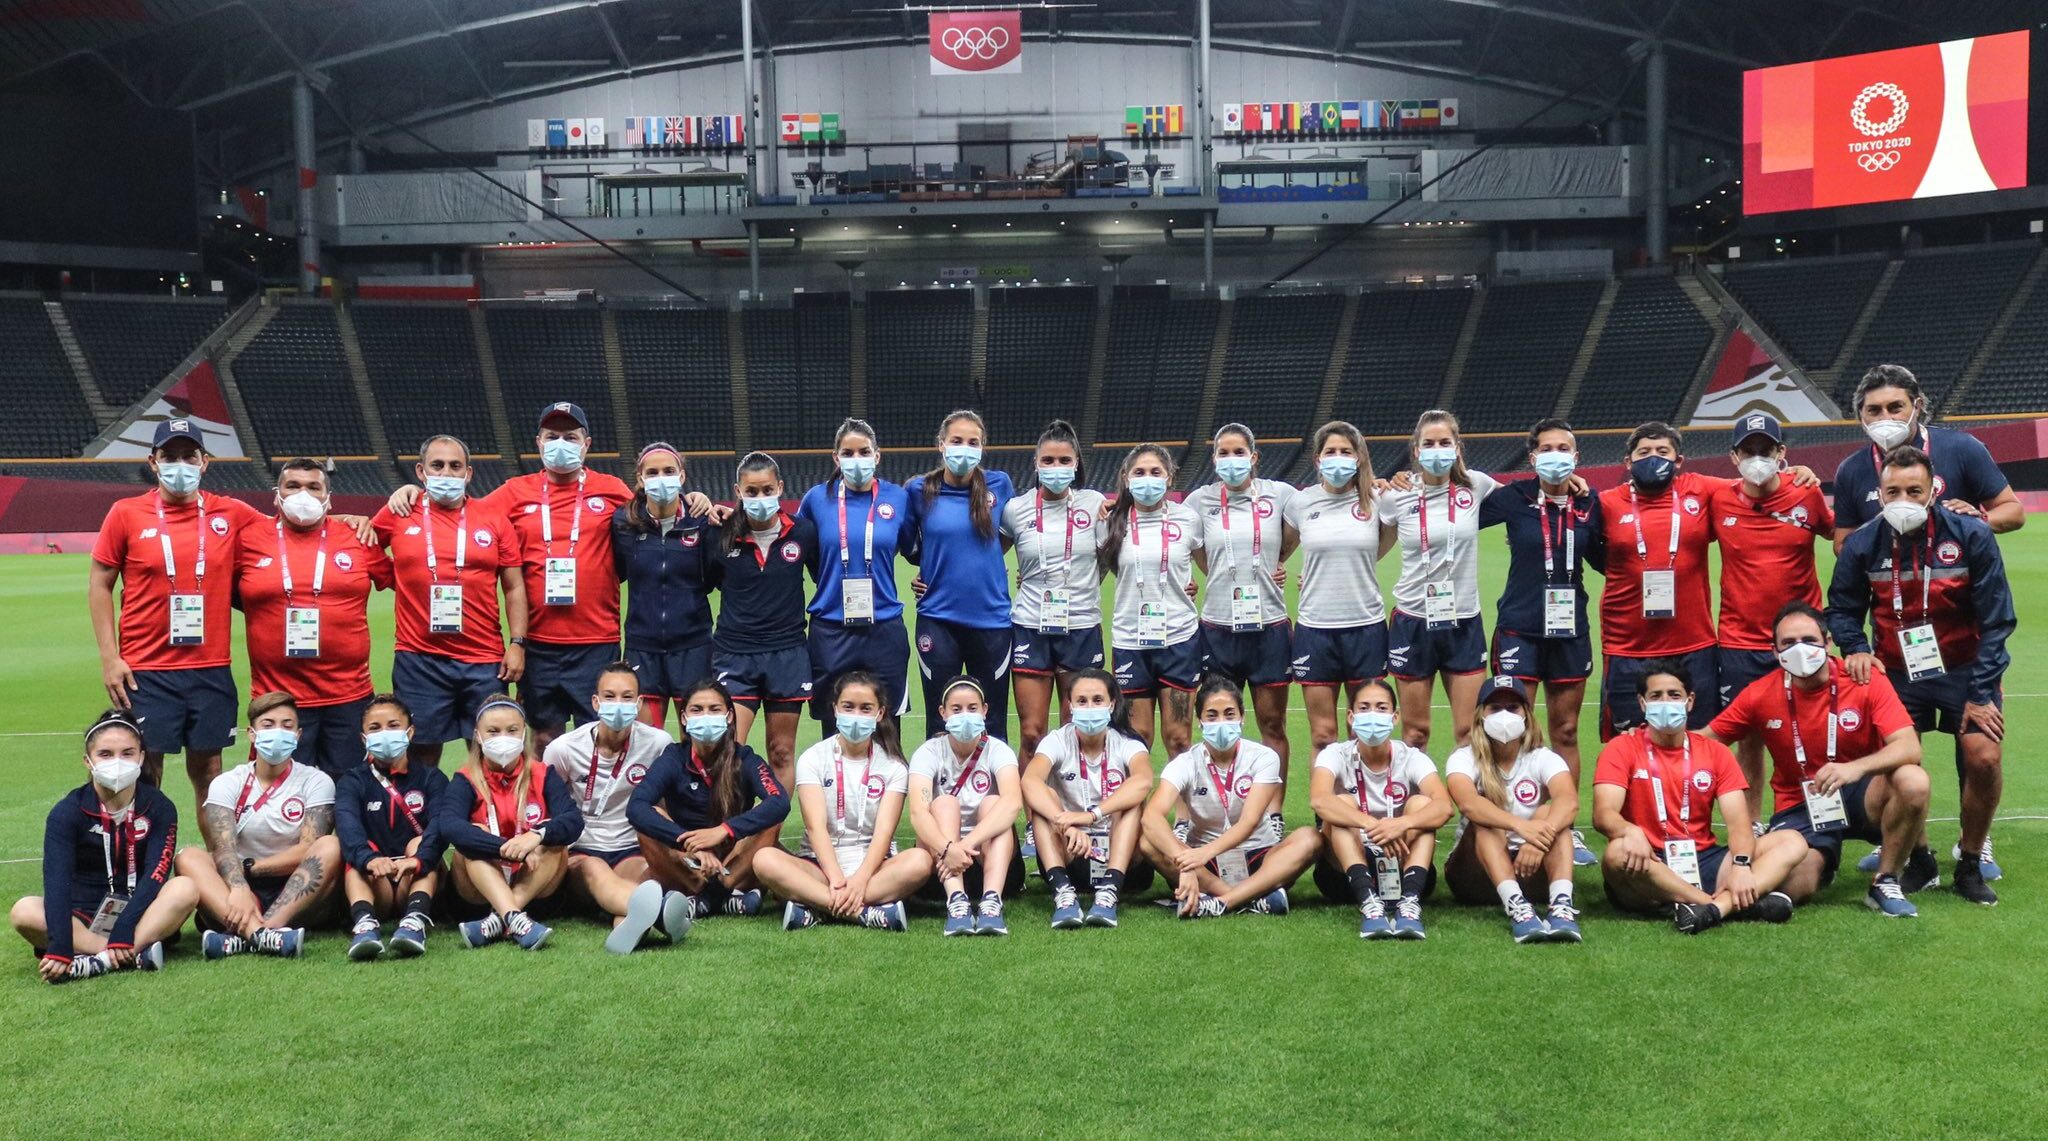 La Roja reconoció el estadio Sapporo Dome a pocas horas del debut en los JJOO